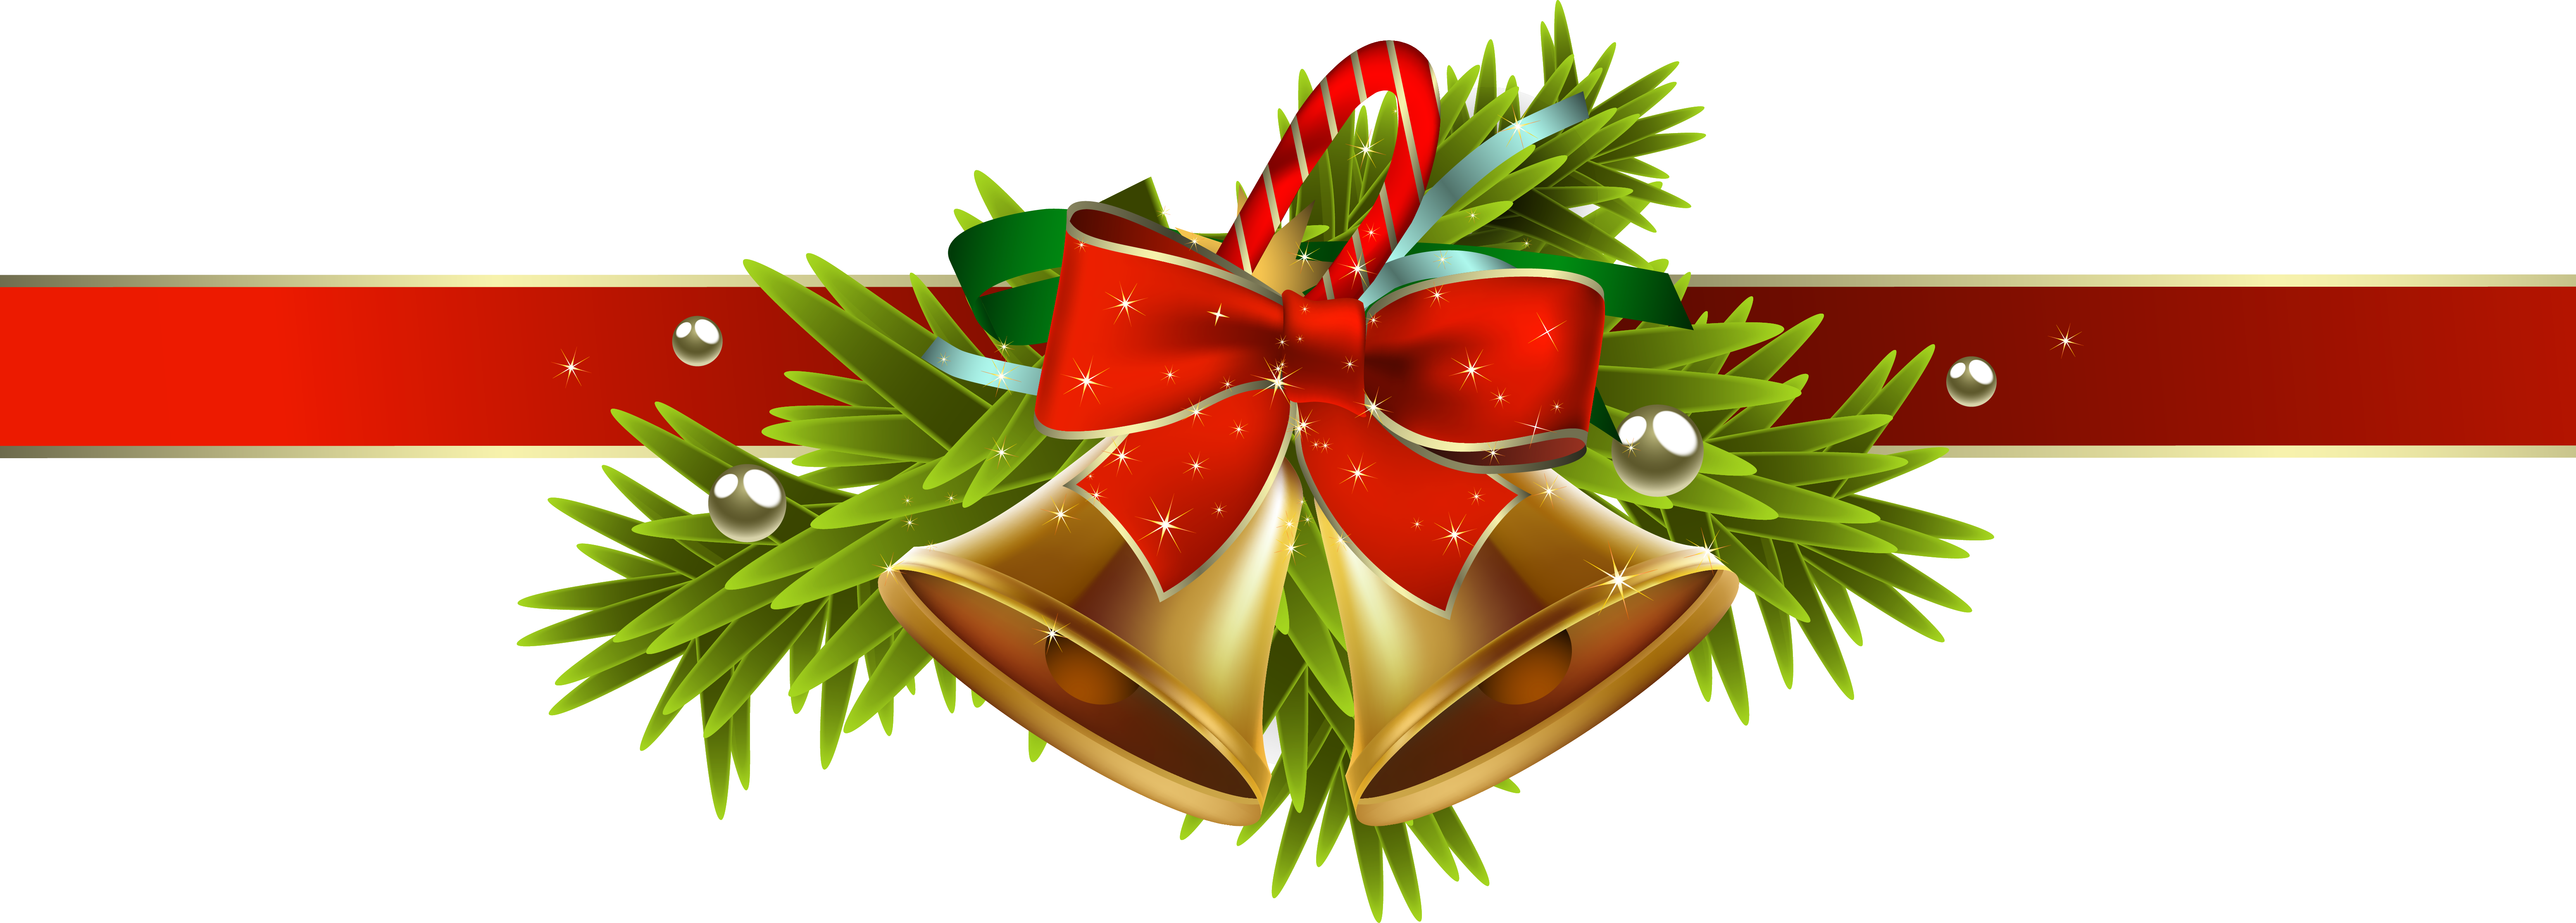 free-christmas-ribbons-cliparts-download-free-christmas-ribbons